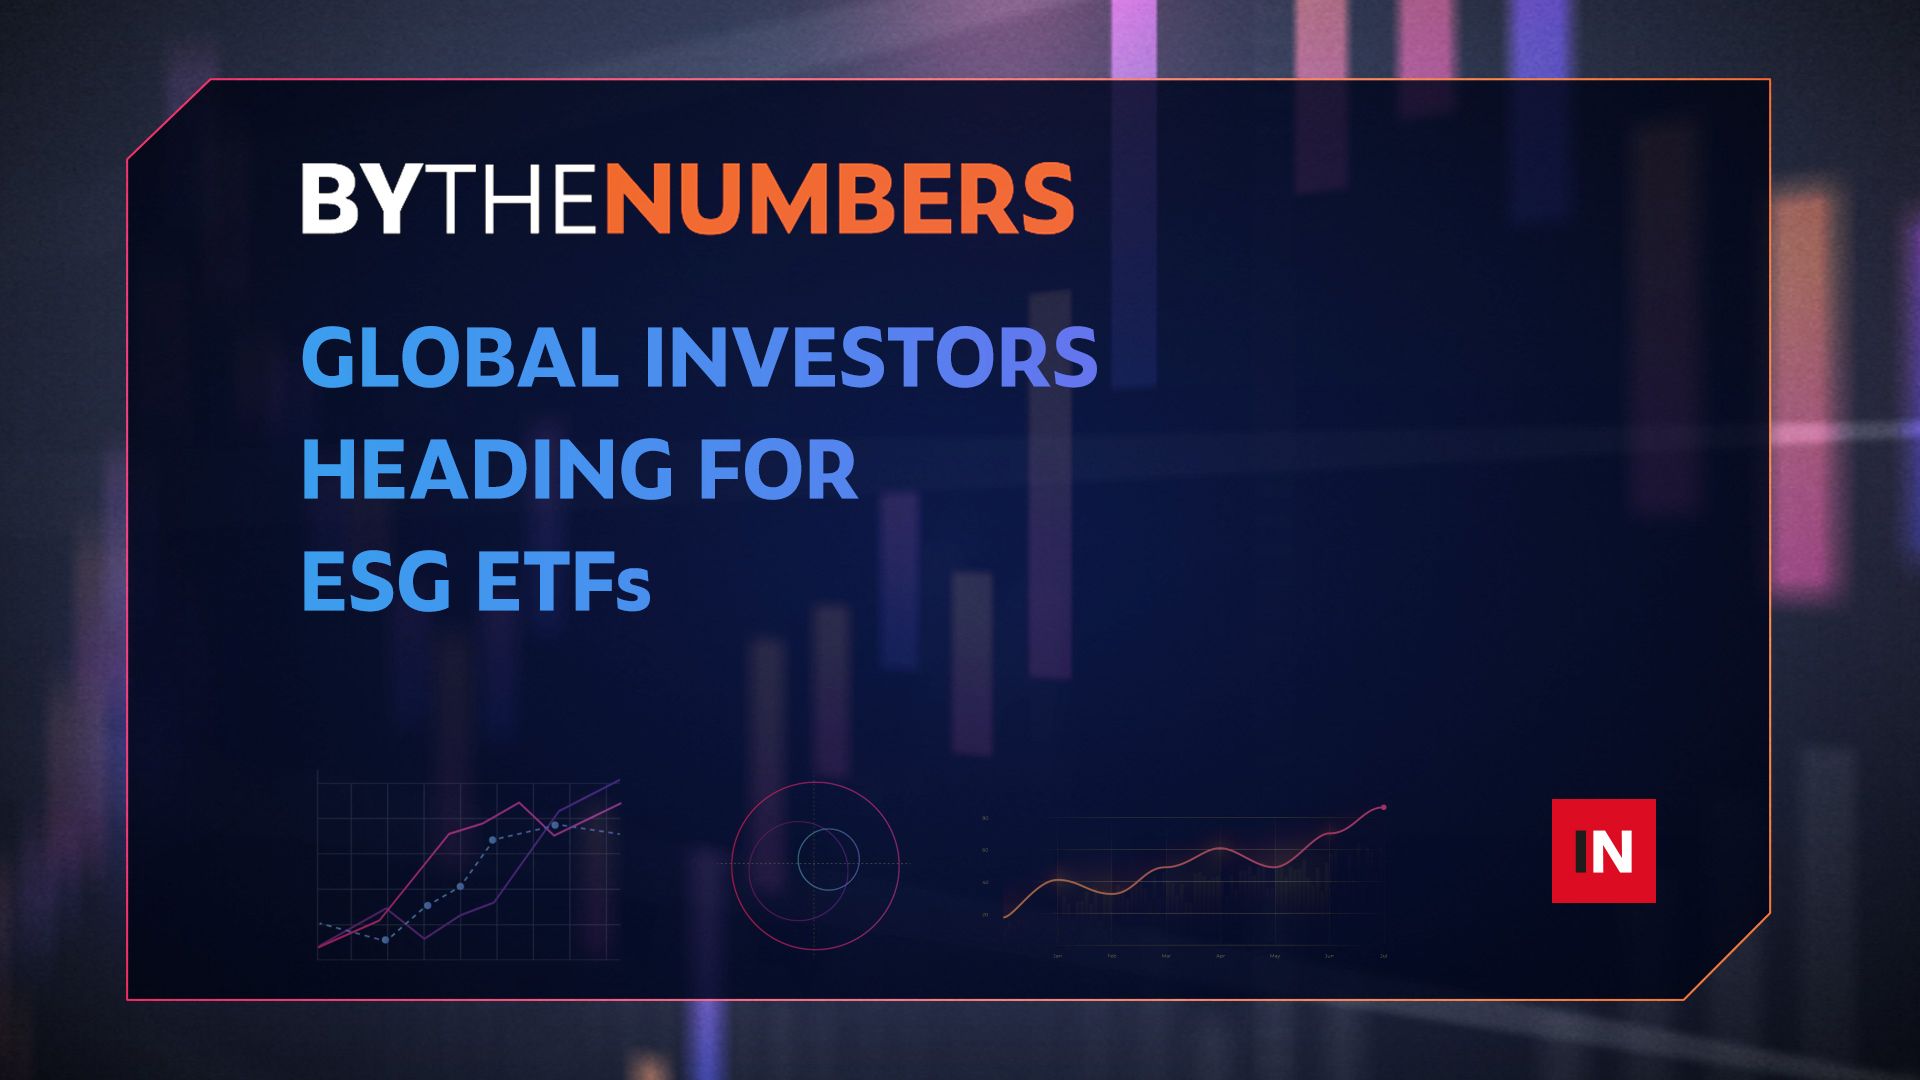 Global investors heading for ESG ETFs